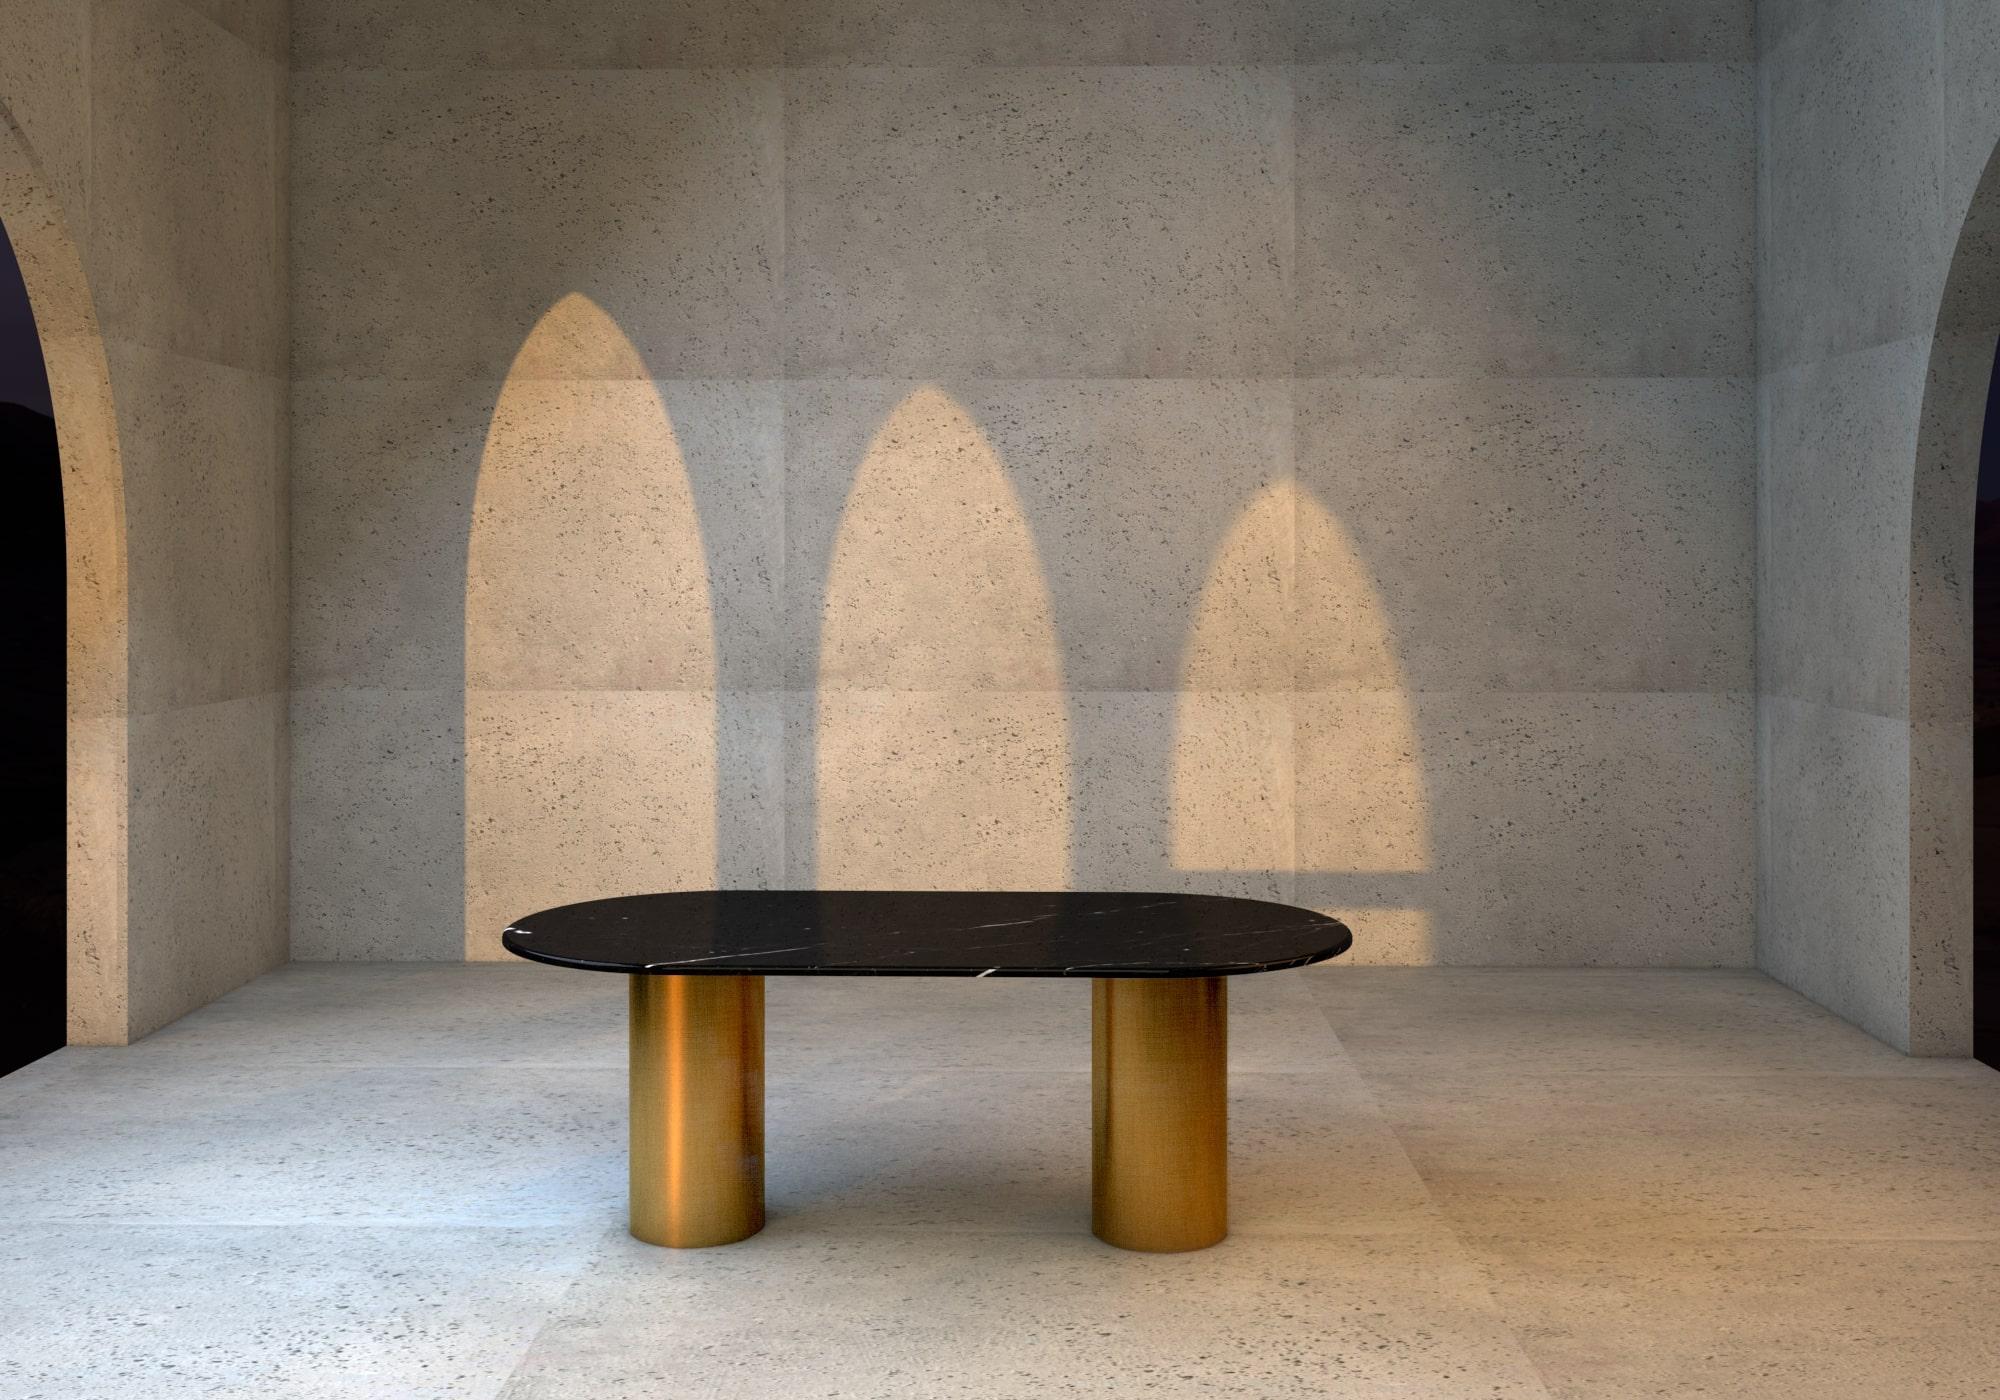 Die einfachen und geometrischen Formen des Esstisches Ovale nq1 schaffen eine skulpturale und minimale Ästhetik, die mit einem skurrilen Spiel zwischen Farbe, Material und Textur verschmolzen ist.

Die Struktur besteht aus zwei Stahlrohren, die mit